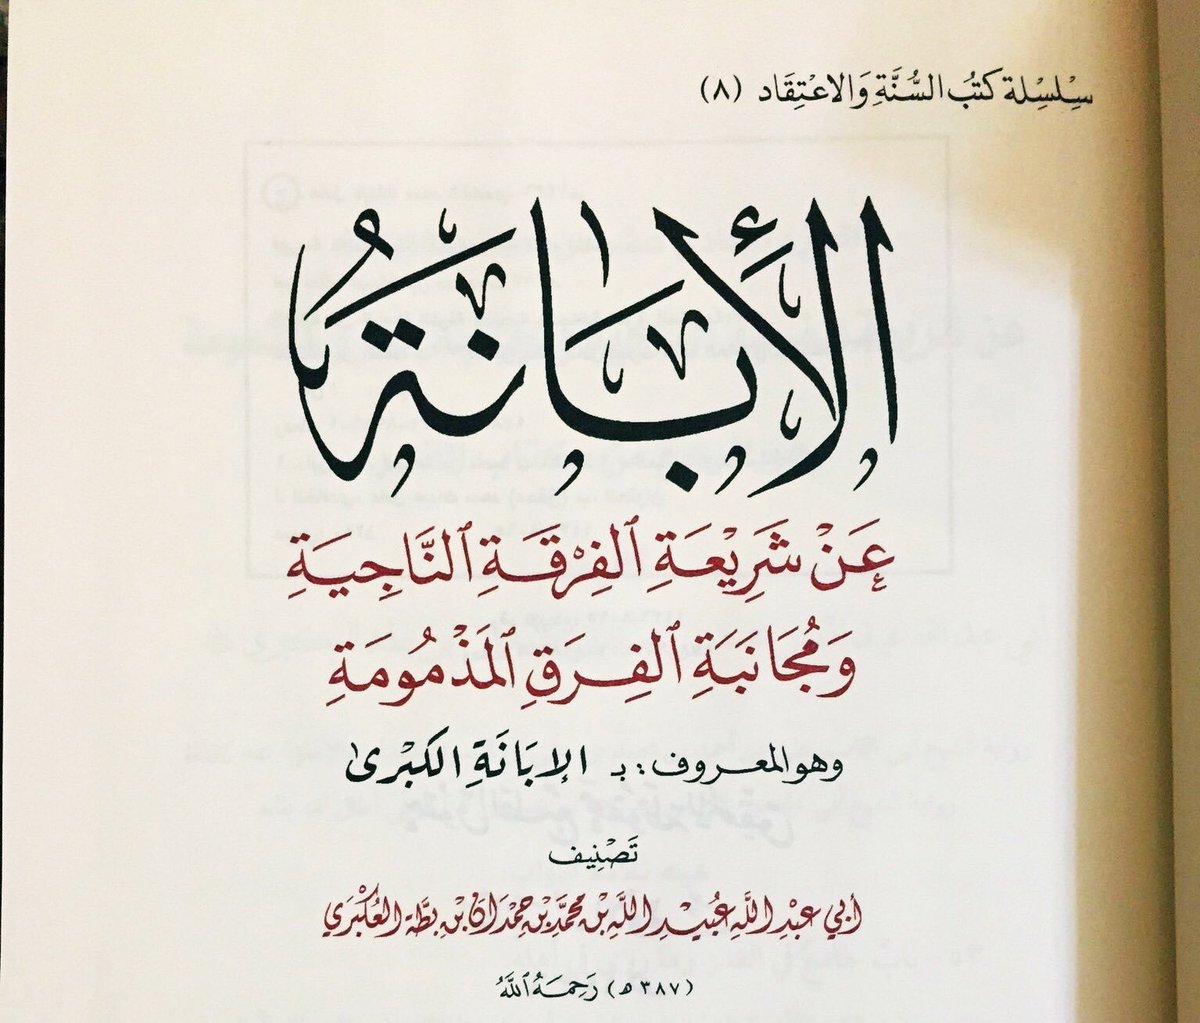 7) L’Imam Ibn Battah al-Hanbali (m.387h) explique la doctrine des pieux prédécesseurs (salaf) en ce qui concerne les attributs (صفات) d’Allah.